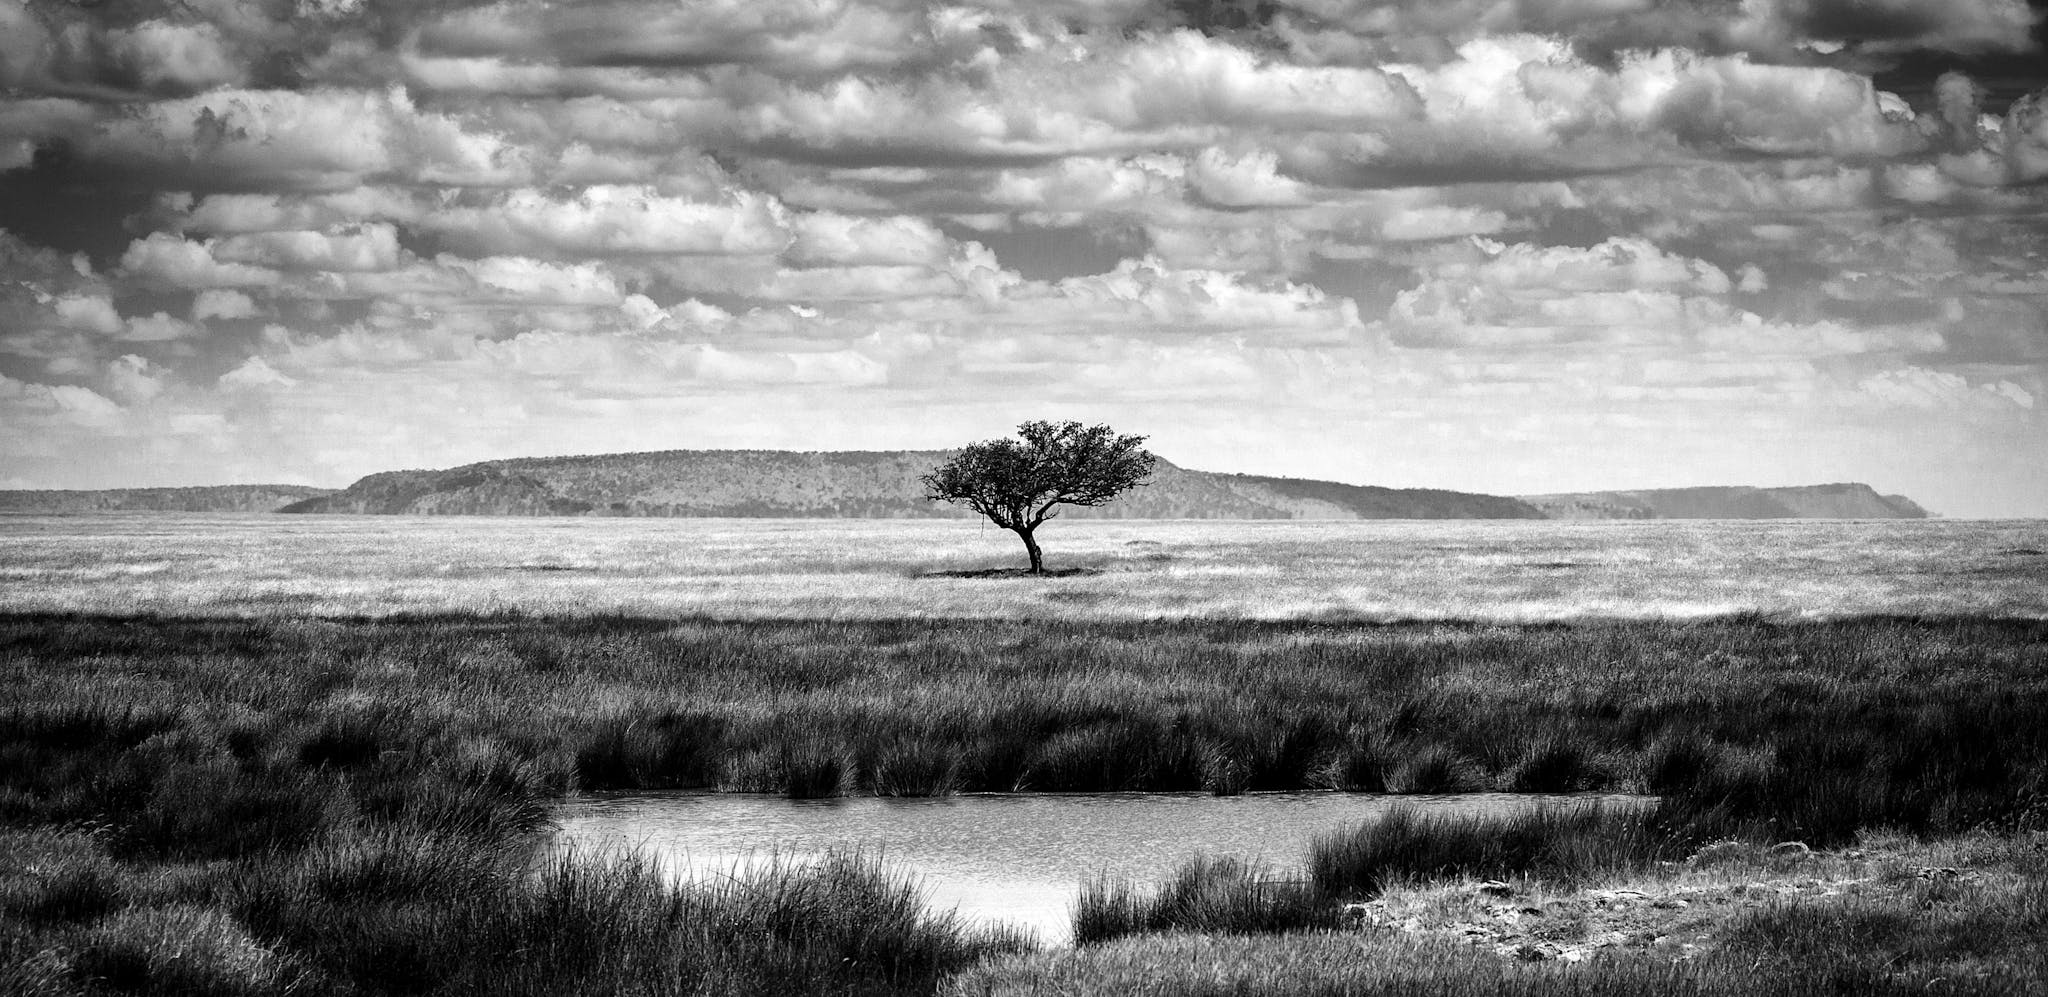 Single tree near in National Park of Serengeti Tanzania